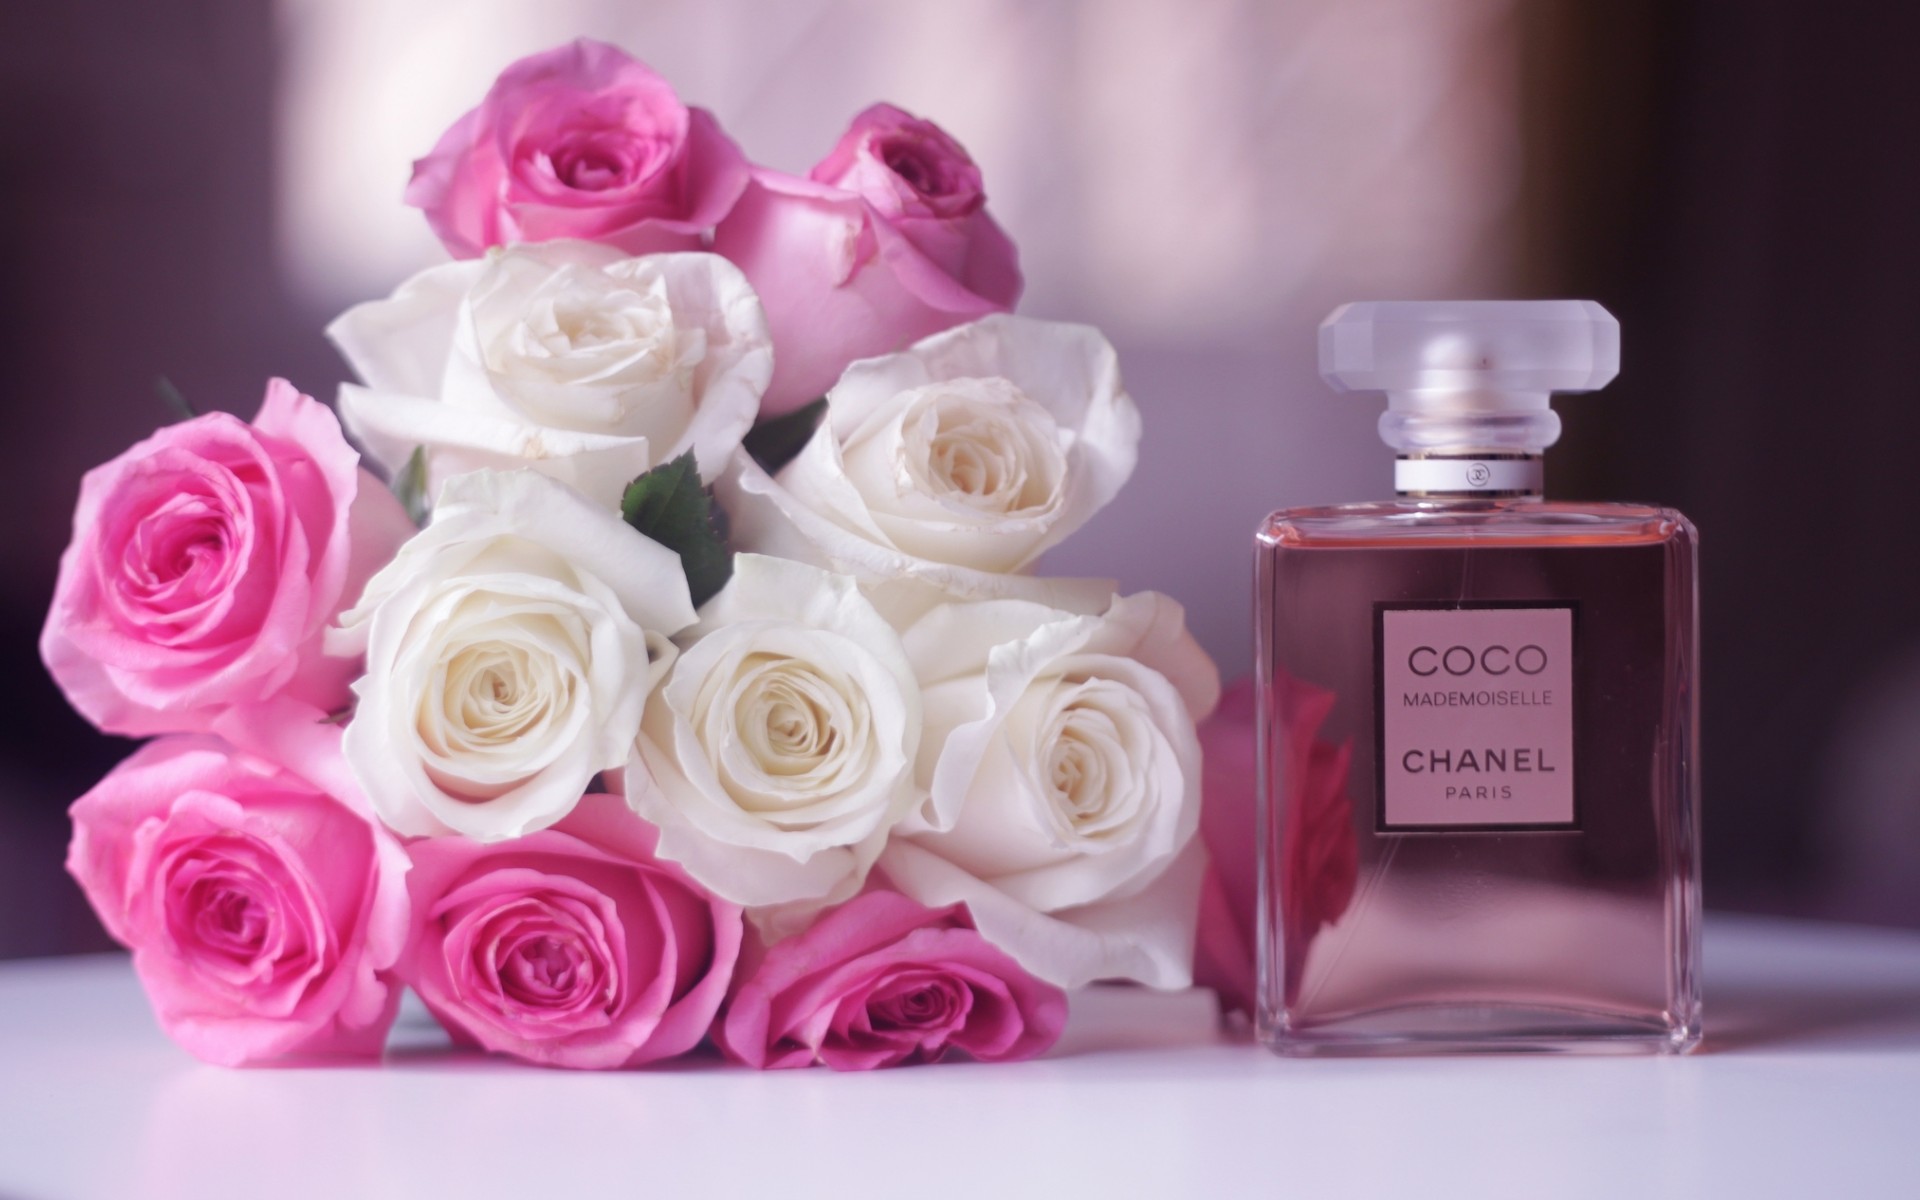 Fonds d'écran Coco Chanel : tous les wallpapers Coco Chanel